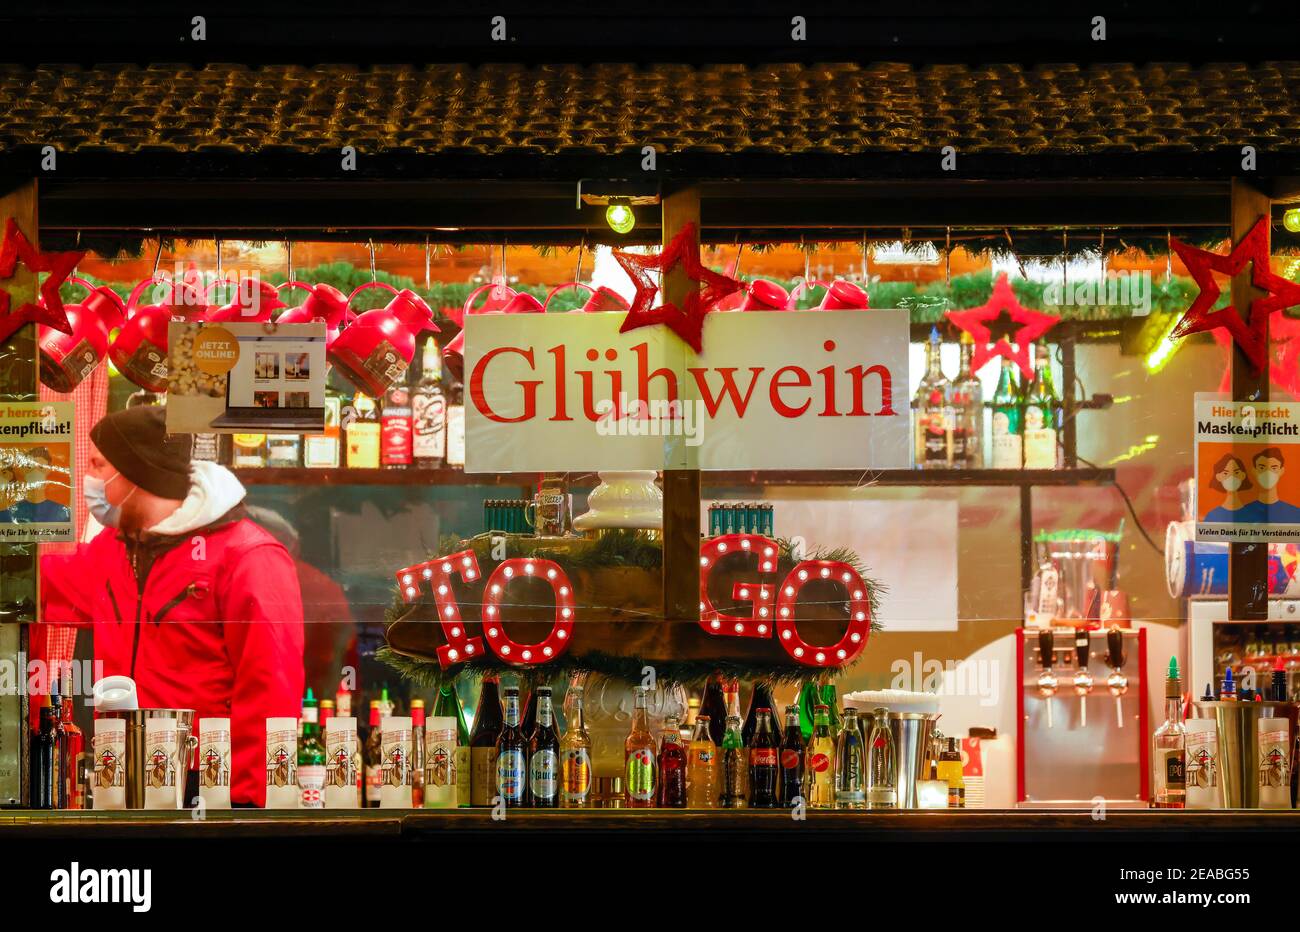 Essen, région de la Ruhr, Rhénanie-du-Nord-Westphalie, Allemagne - stand de vin chaud dans le centre-ville d'Essen en temps de crise de la couronne à l'heure de Noël à la veille du deuxième confinement, les magasins et les quelques étals de marché de Noël sont encore ouverts Banque D'Images